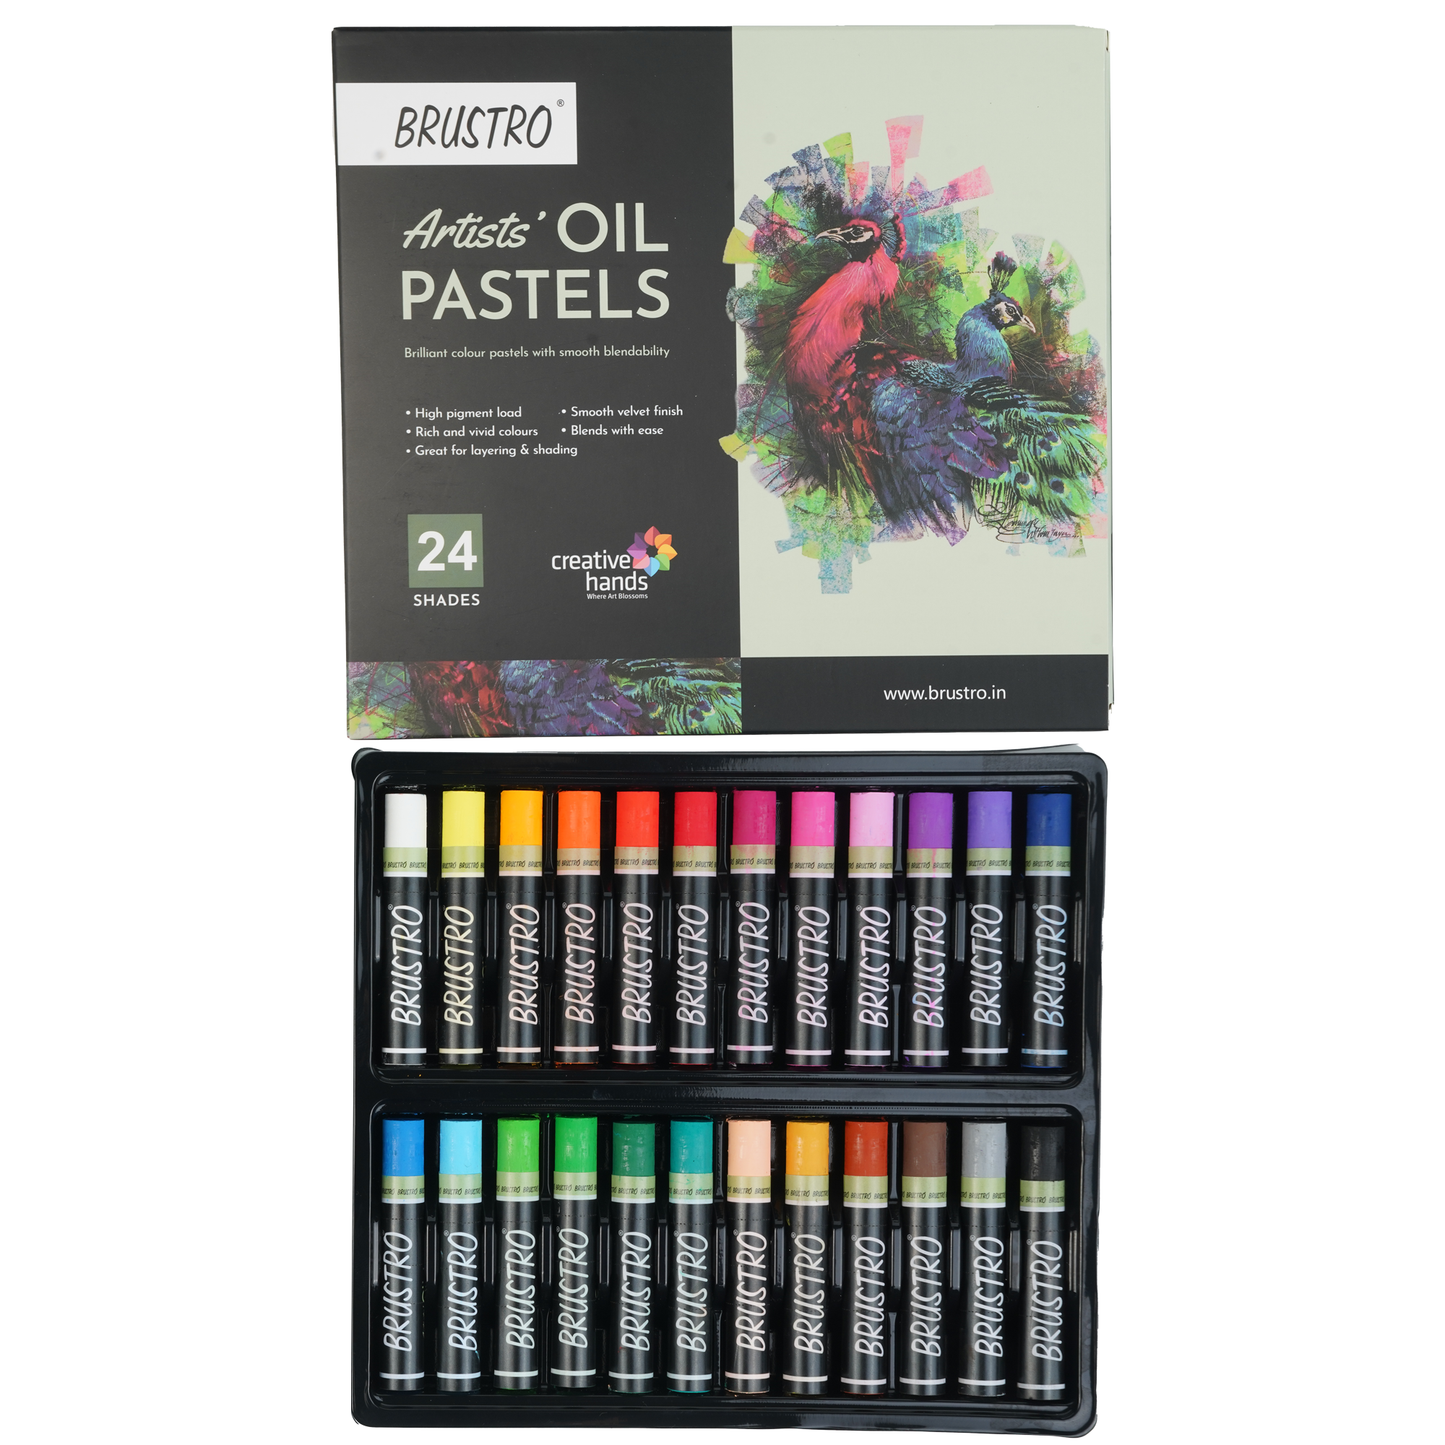 BRUSTRO Artist Oil pastel set of 24 (Regular)